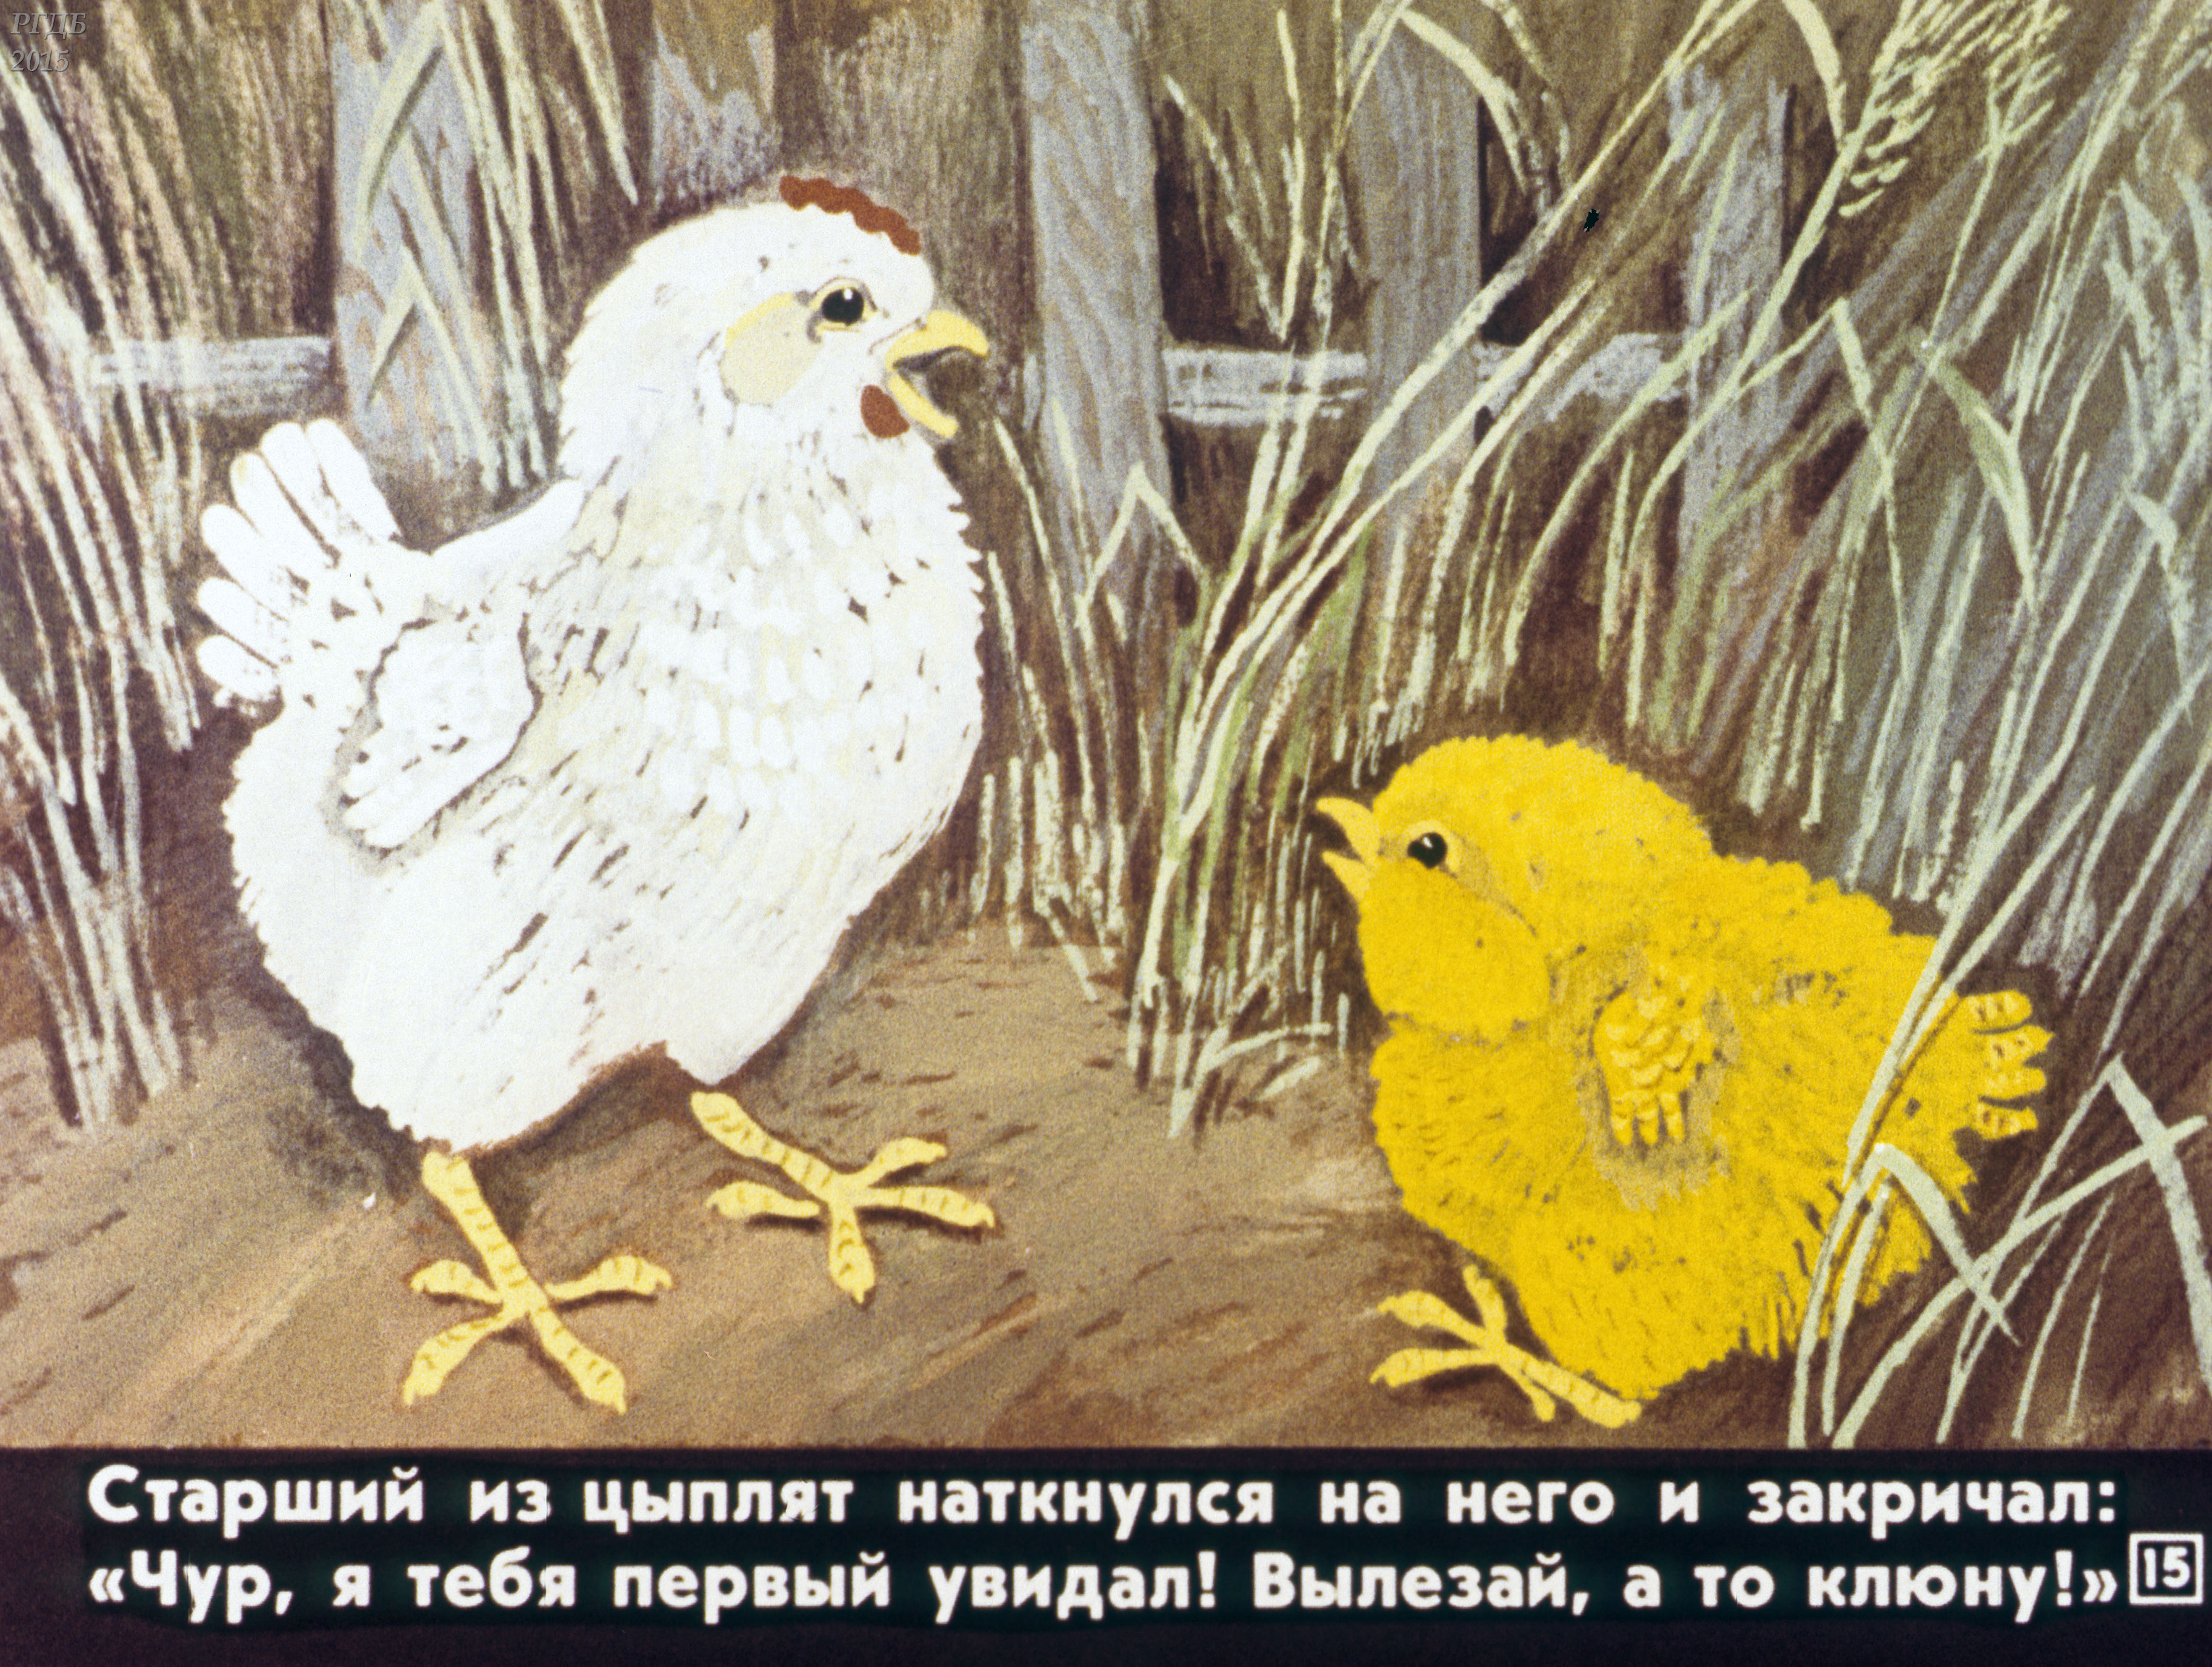 Цыпленок сказка читать. Сказка про цыпленка. Сказка про цыплят для детей. Рассказ про цыпленка. Истории об цыпленке.